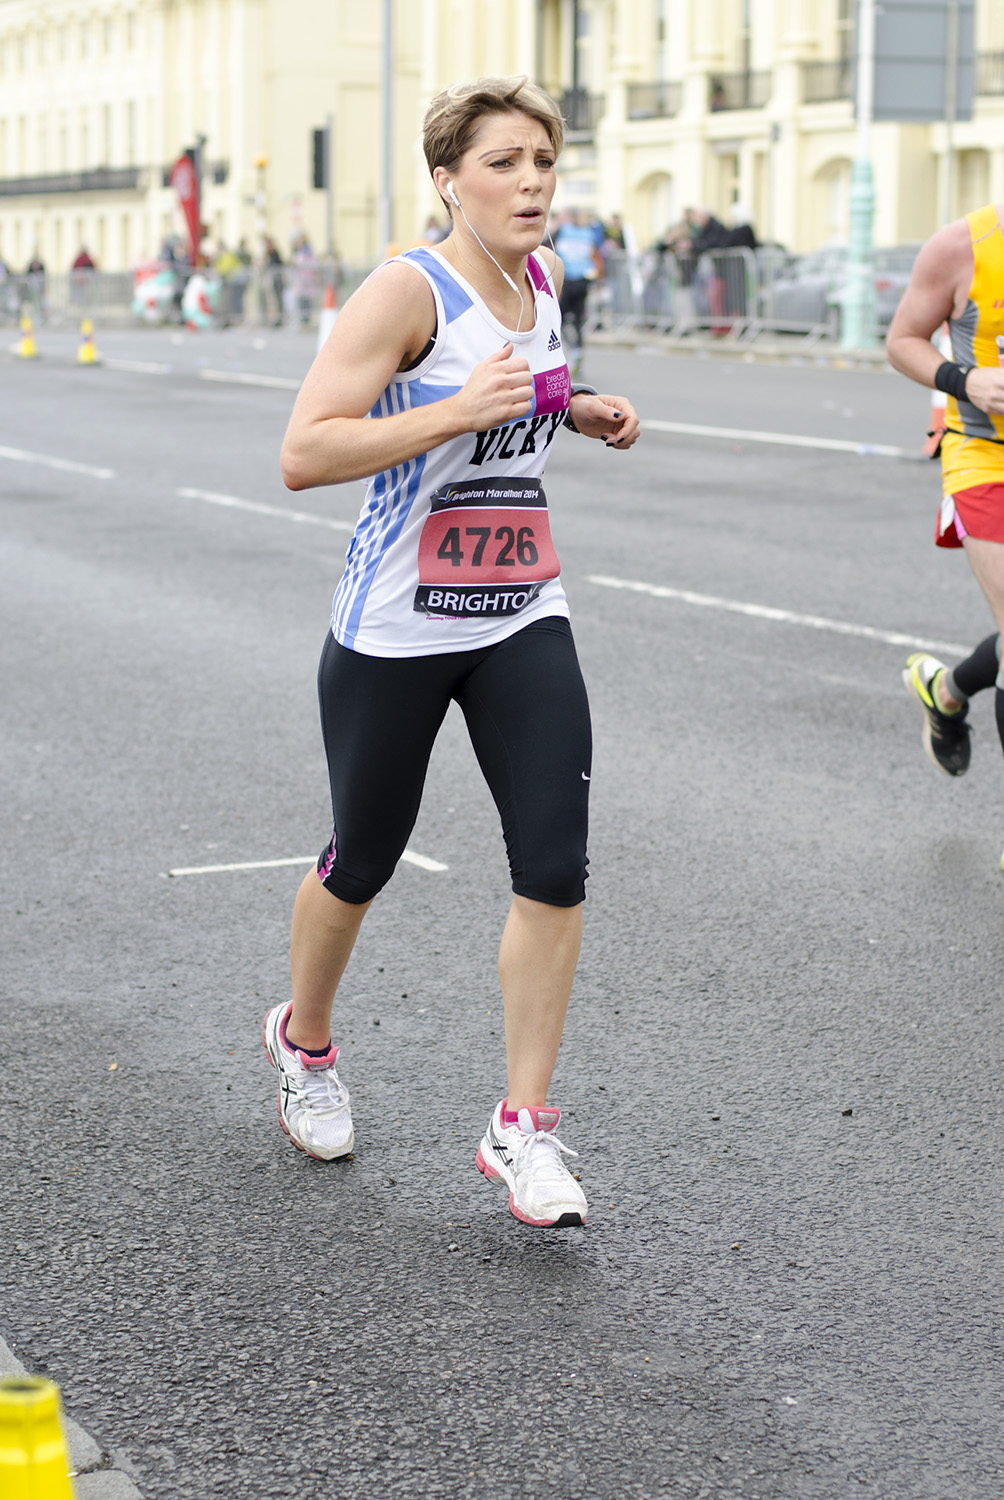  Brighton Marathon 2014 - Mile 24.75 